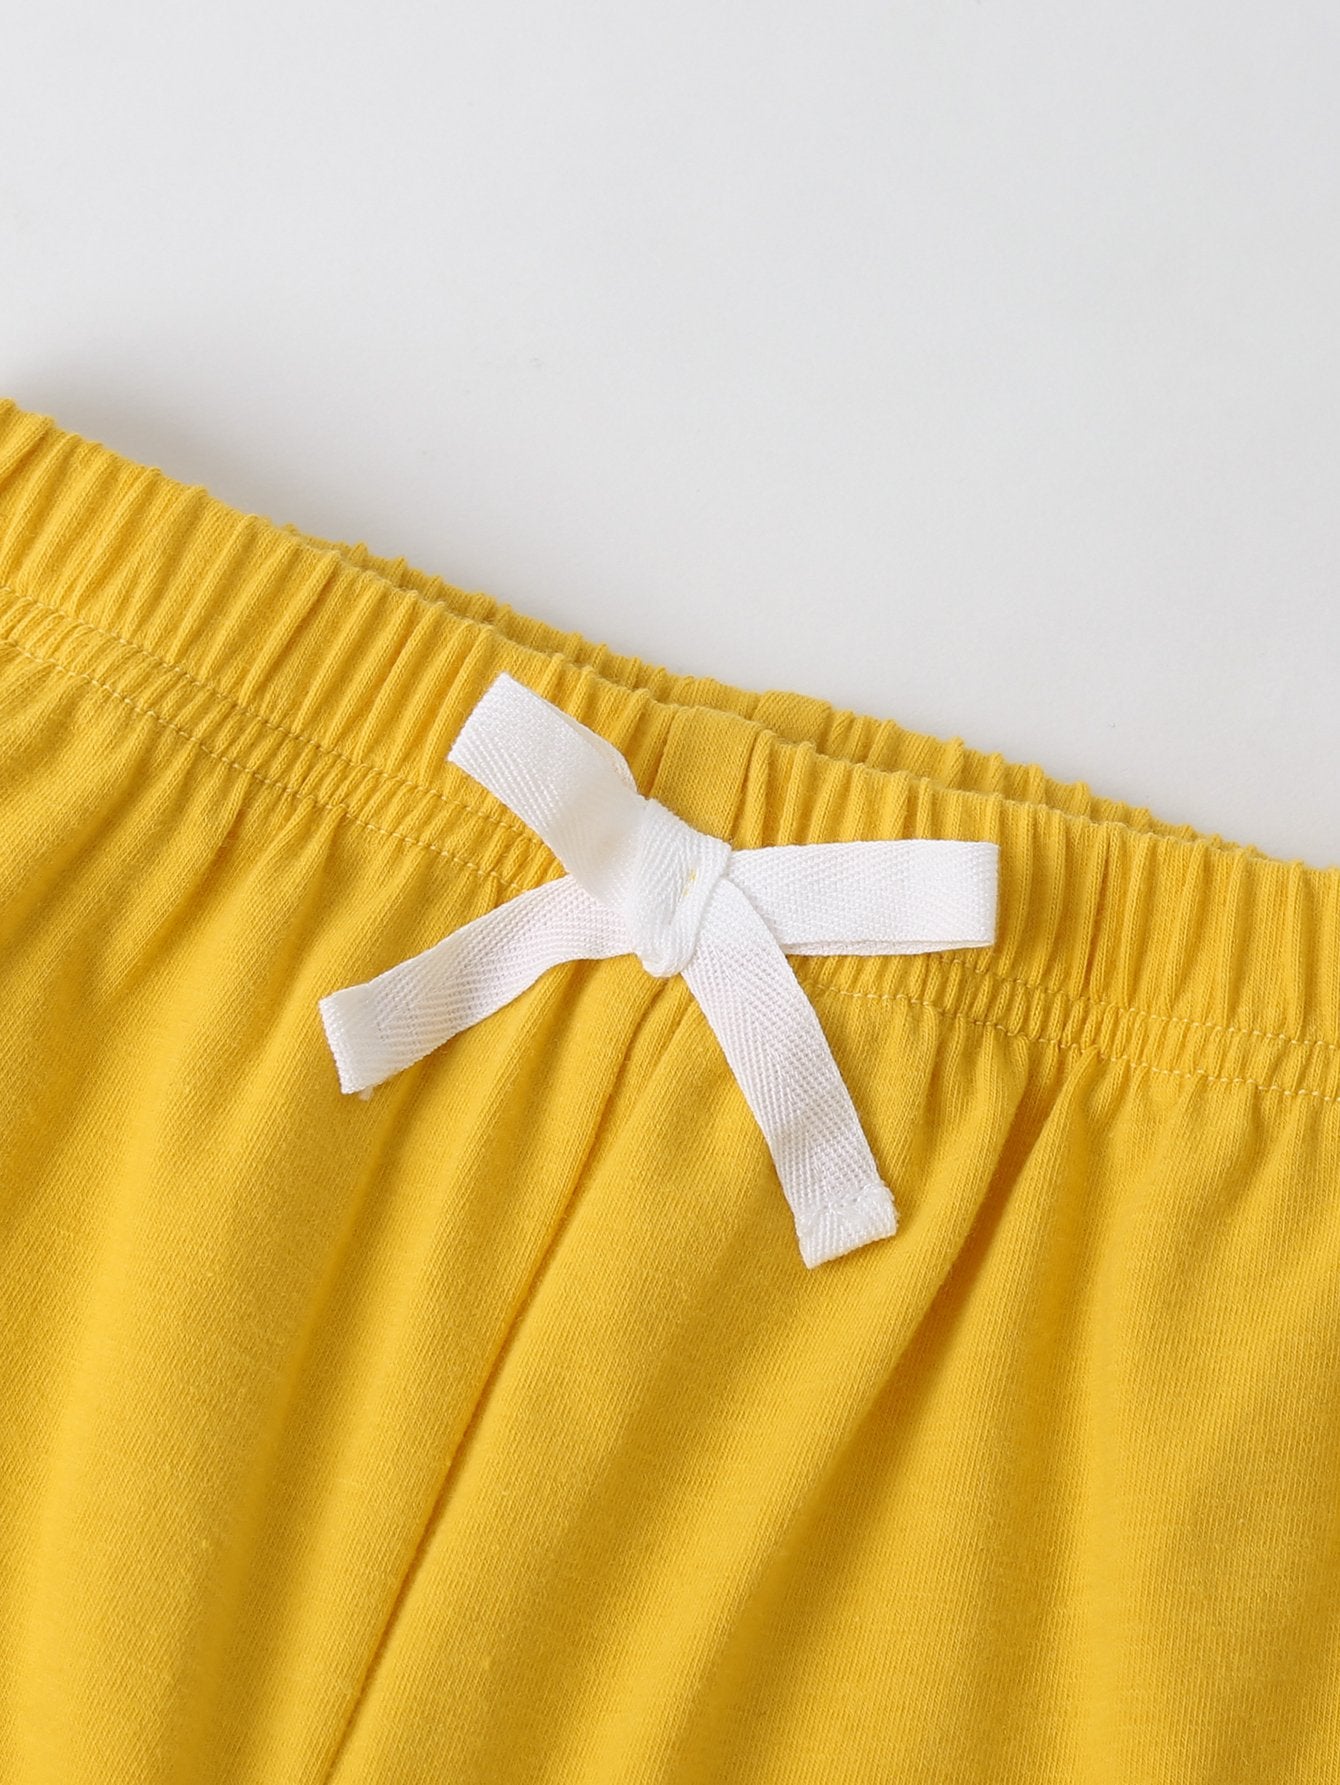 Unisex Short Sleeve Fruit Printed Top & Shorts Kids Wholesale Clothing